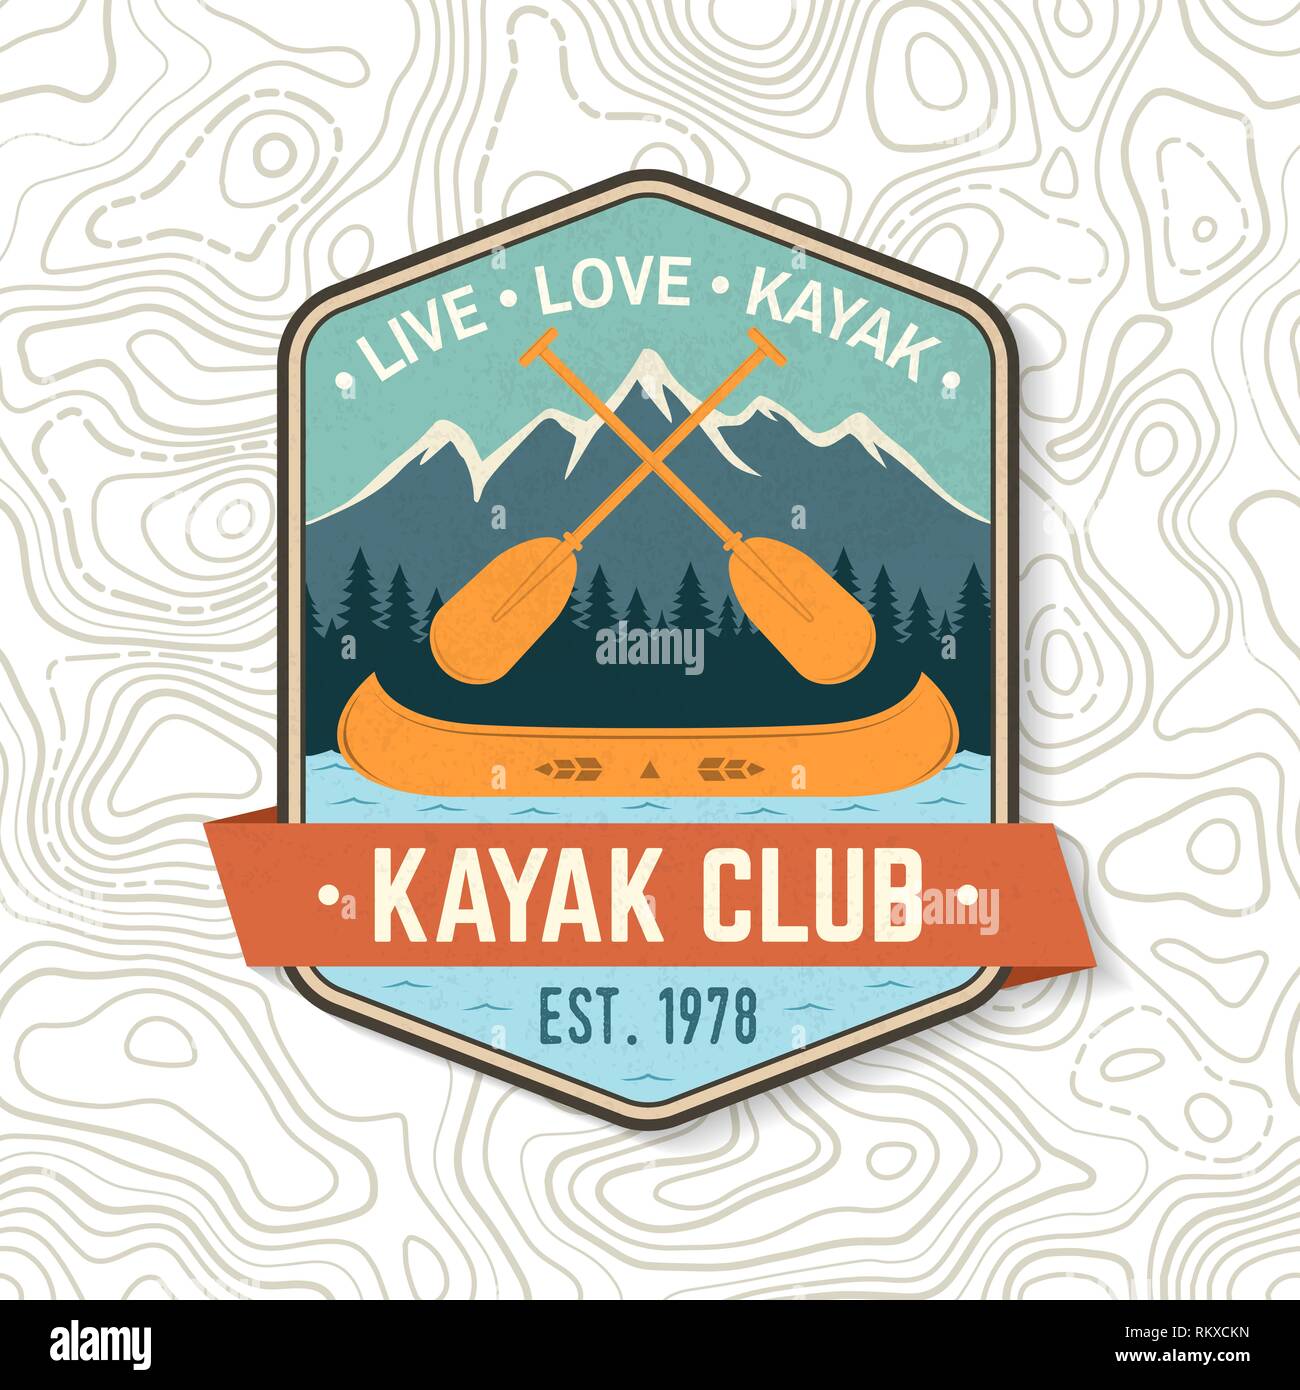 Kayak Club. Live, amore, kayak. Vettore. Concetto di t-shirt, stampare il timbro o il raccordo a t. Design vintage con la montagna, pale e la barca silhouette. Extreme sport d'acqua. Outdoor adventure emblemi di patch Illustrazione Vettoriale